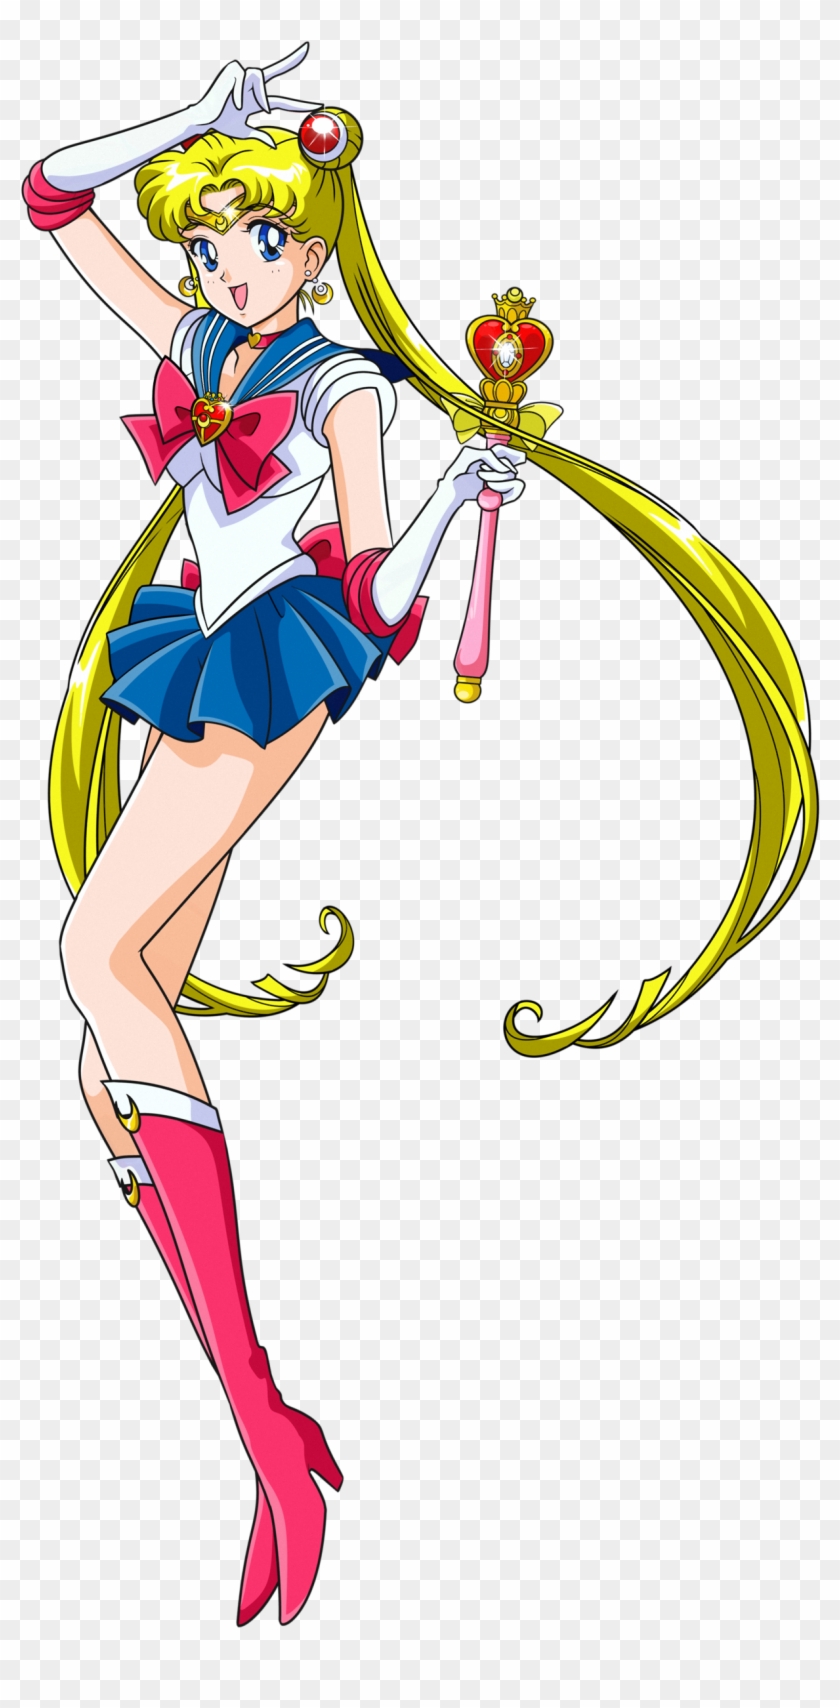 Sailor Moon S - Sailor Moon S Sailor Moon #451922